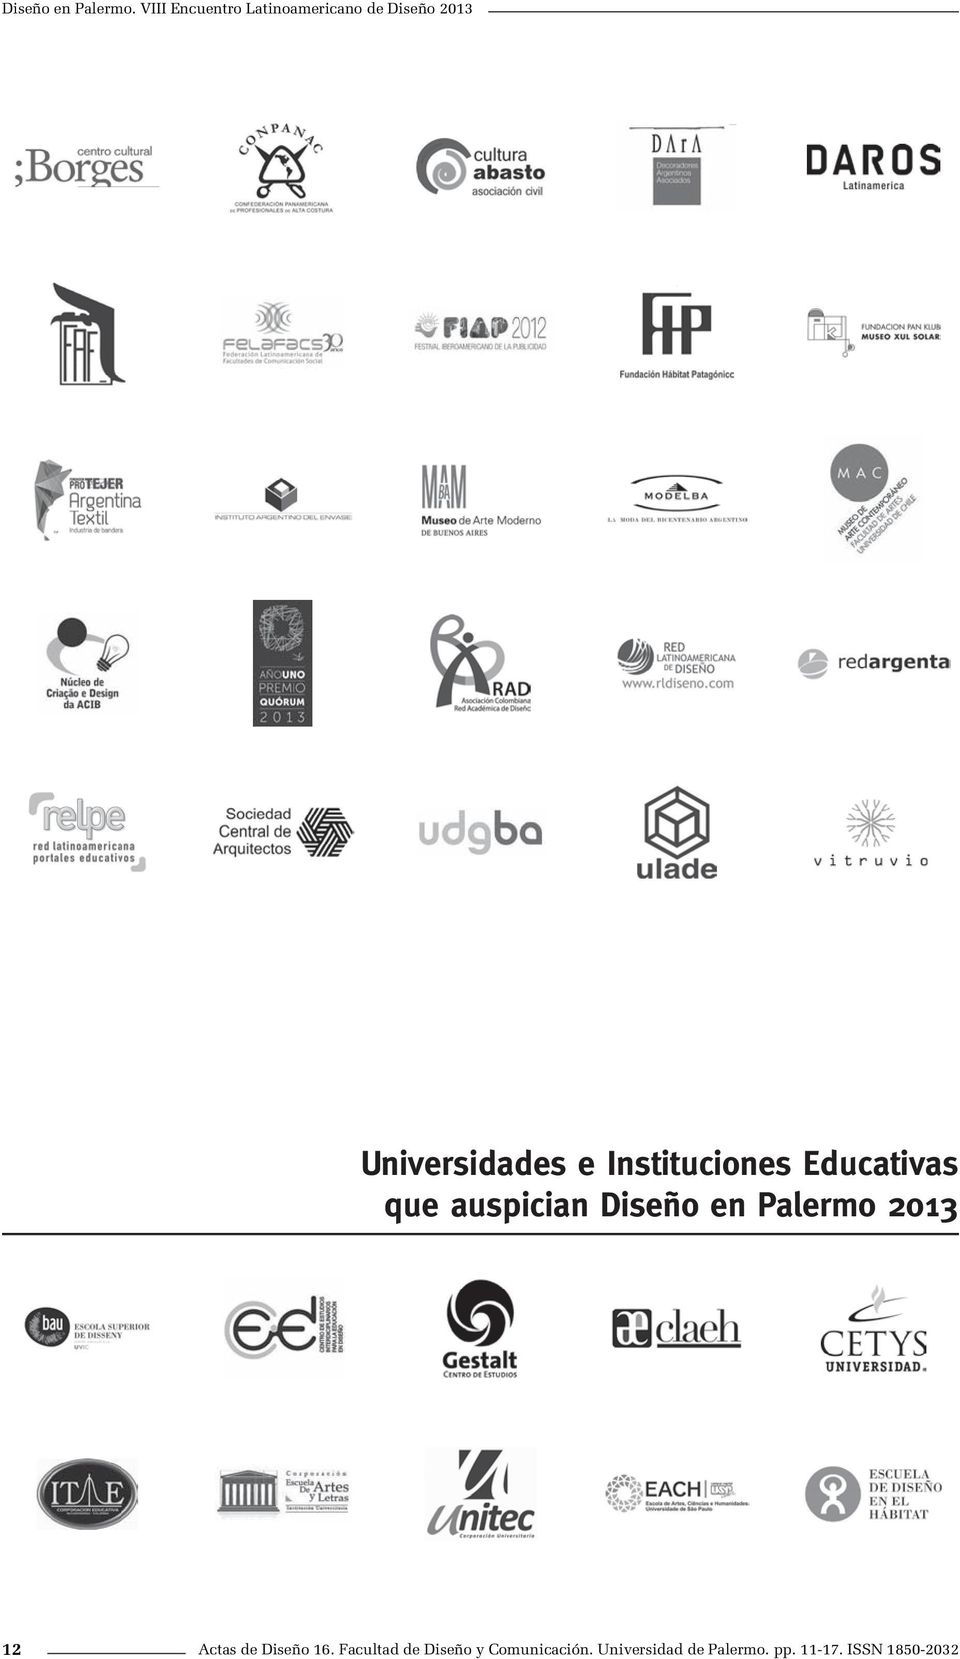 Instituciones Educativas que auspician Diseño en Palermo 2013